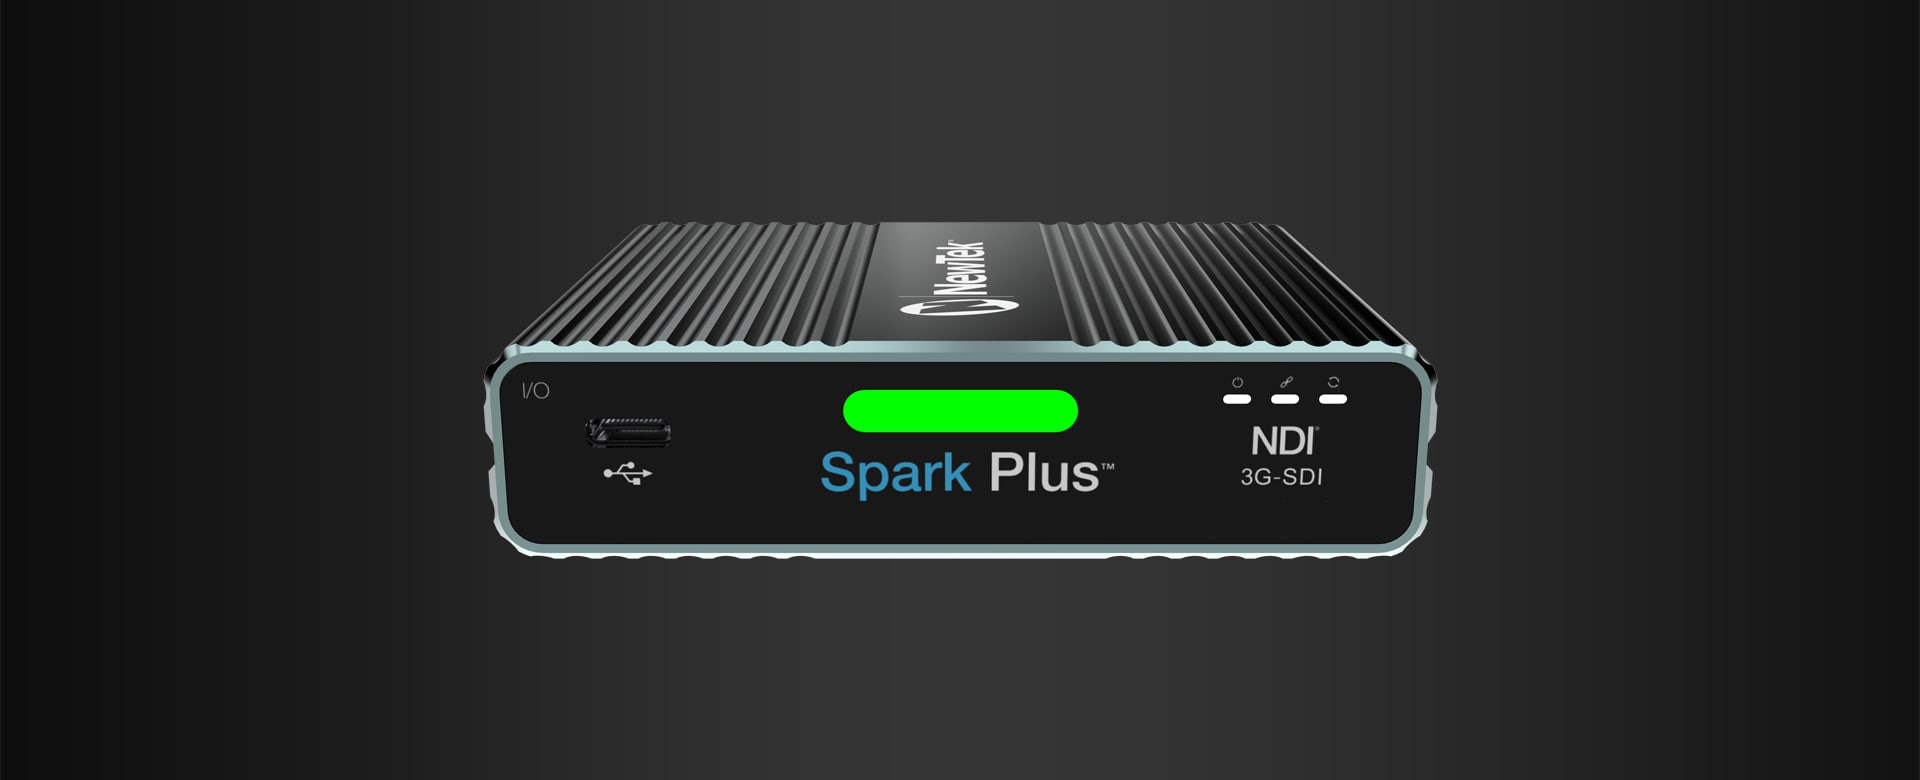 Spark Plus IO SDI